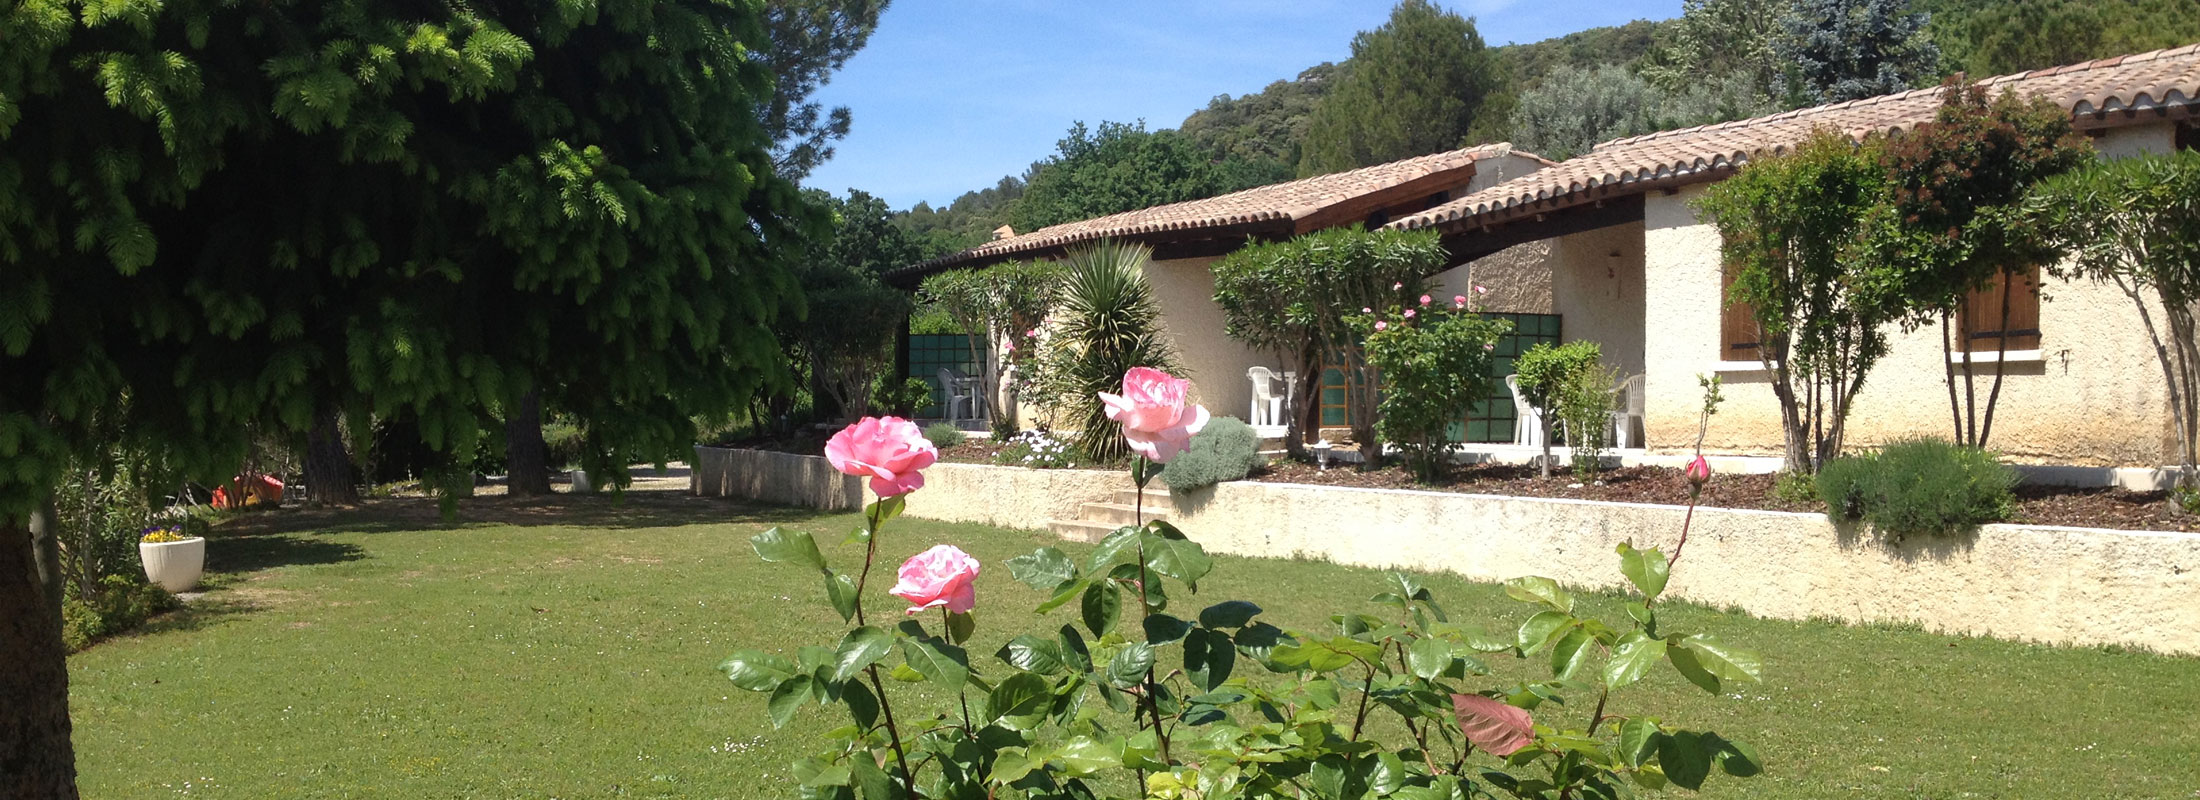 Esapce Loisirs, résidence de vacances en Ardèche